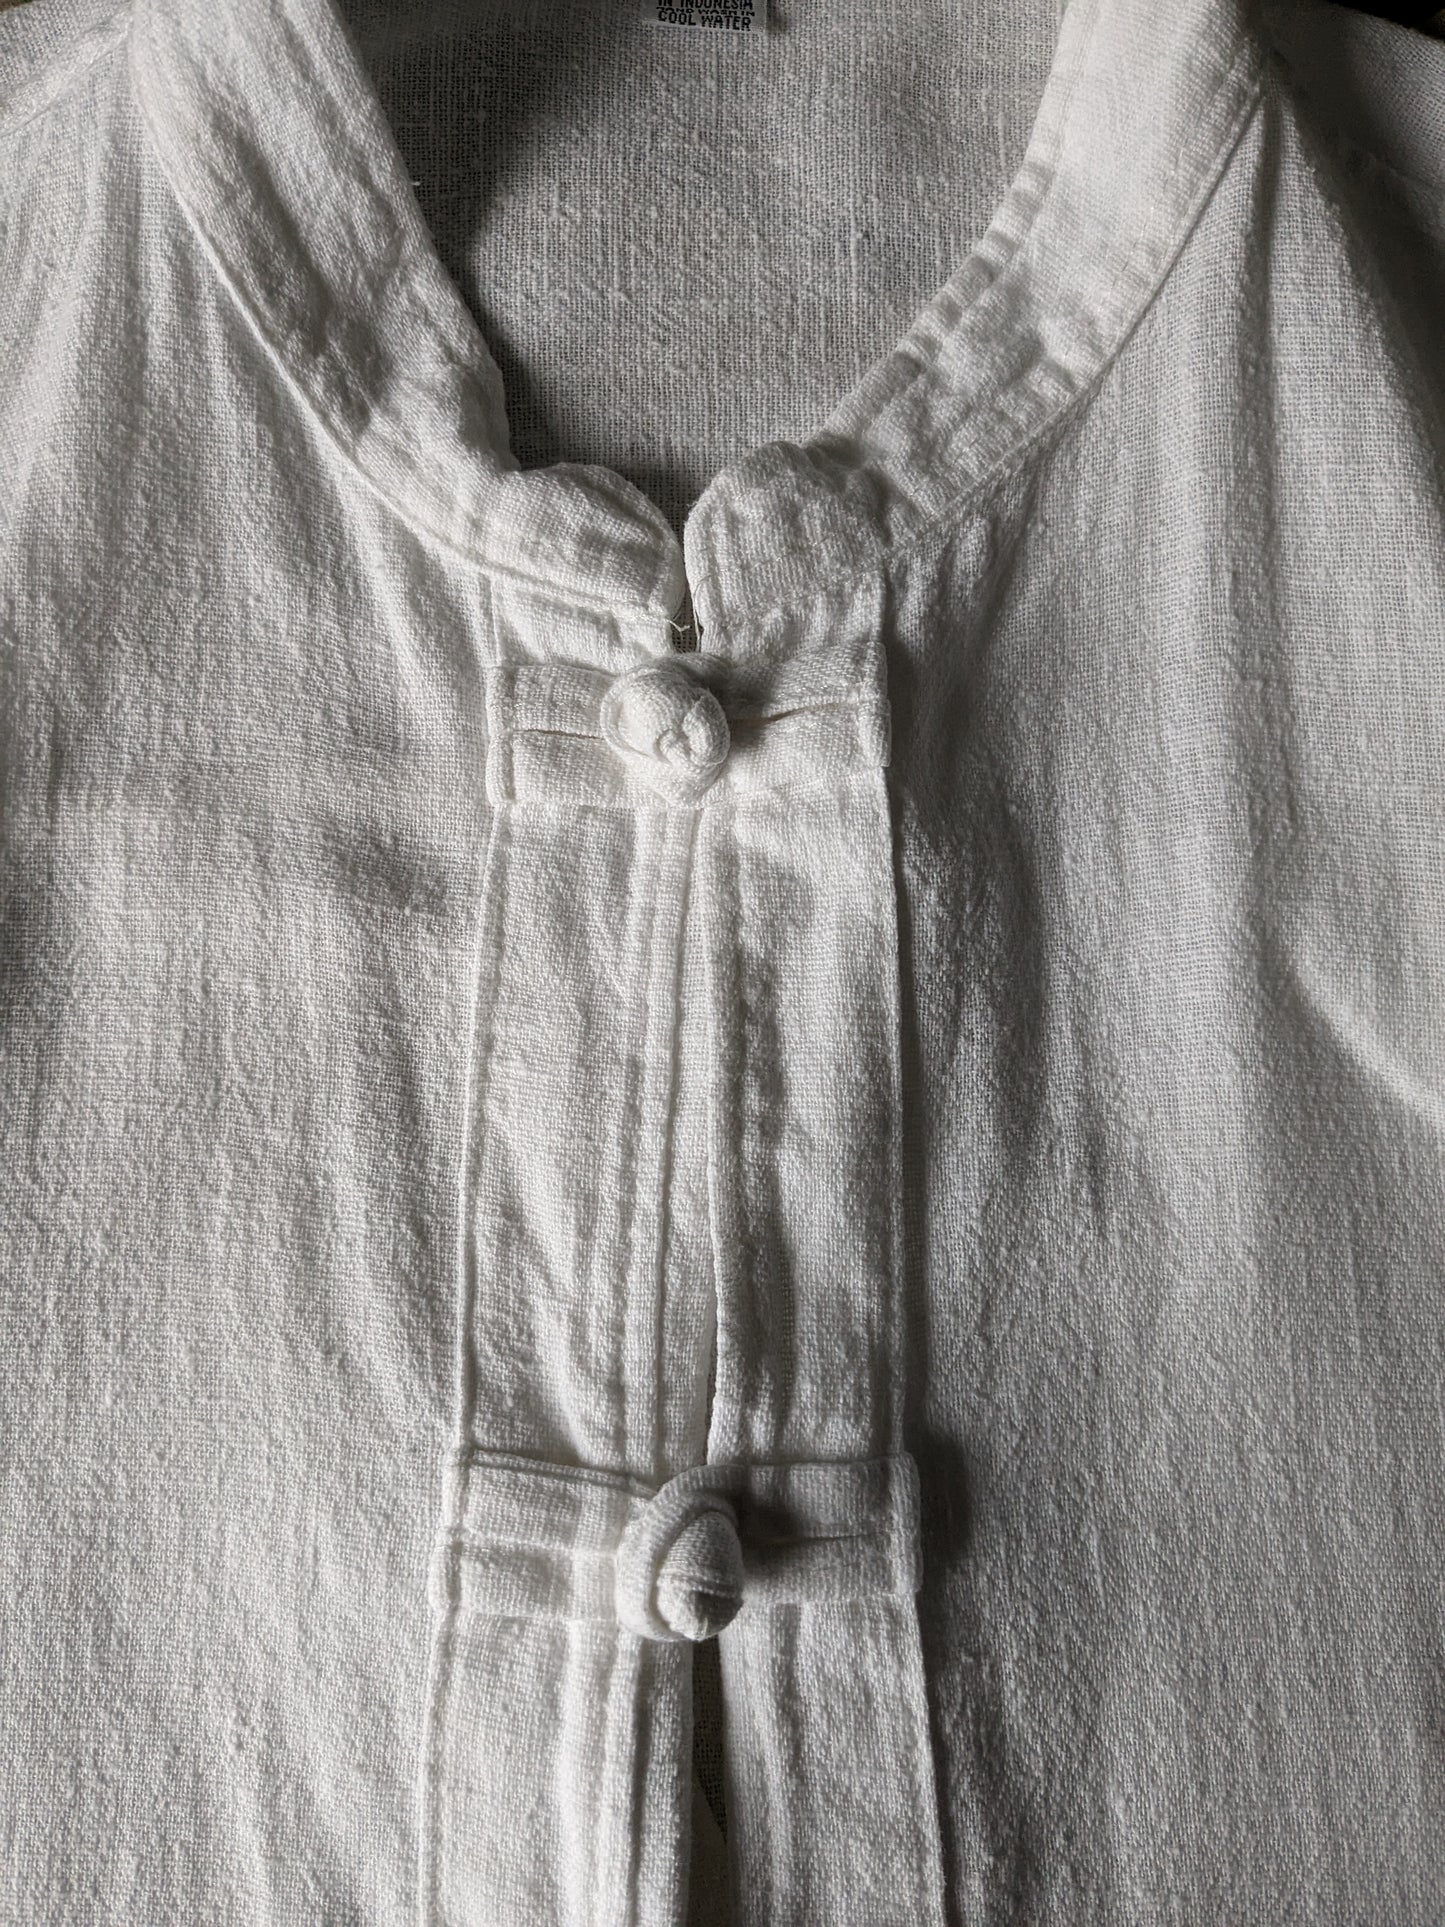 Vintage overhemd met Mao / opstaande kraag. Katoenen knopen en zakken. Maat XL.